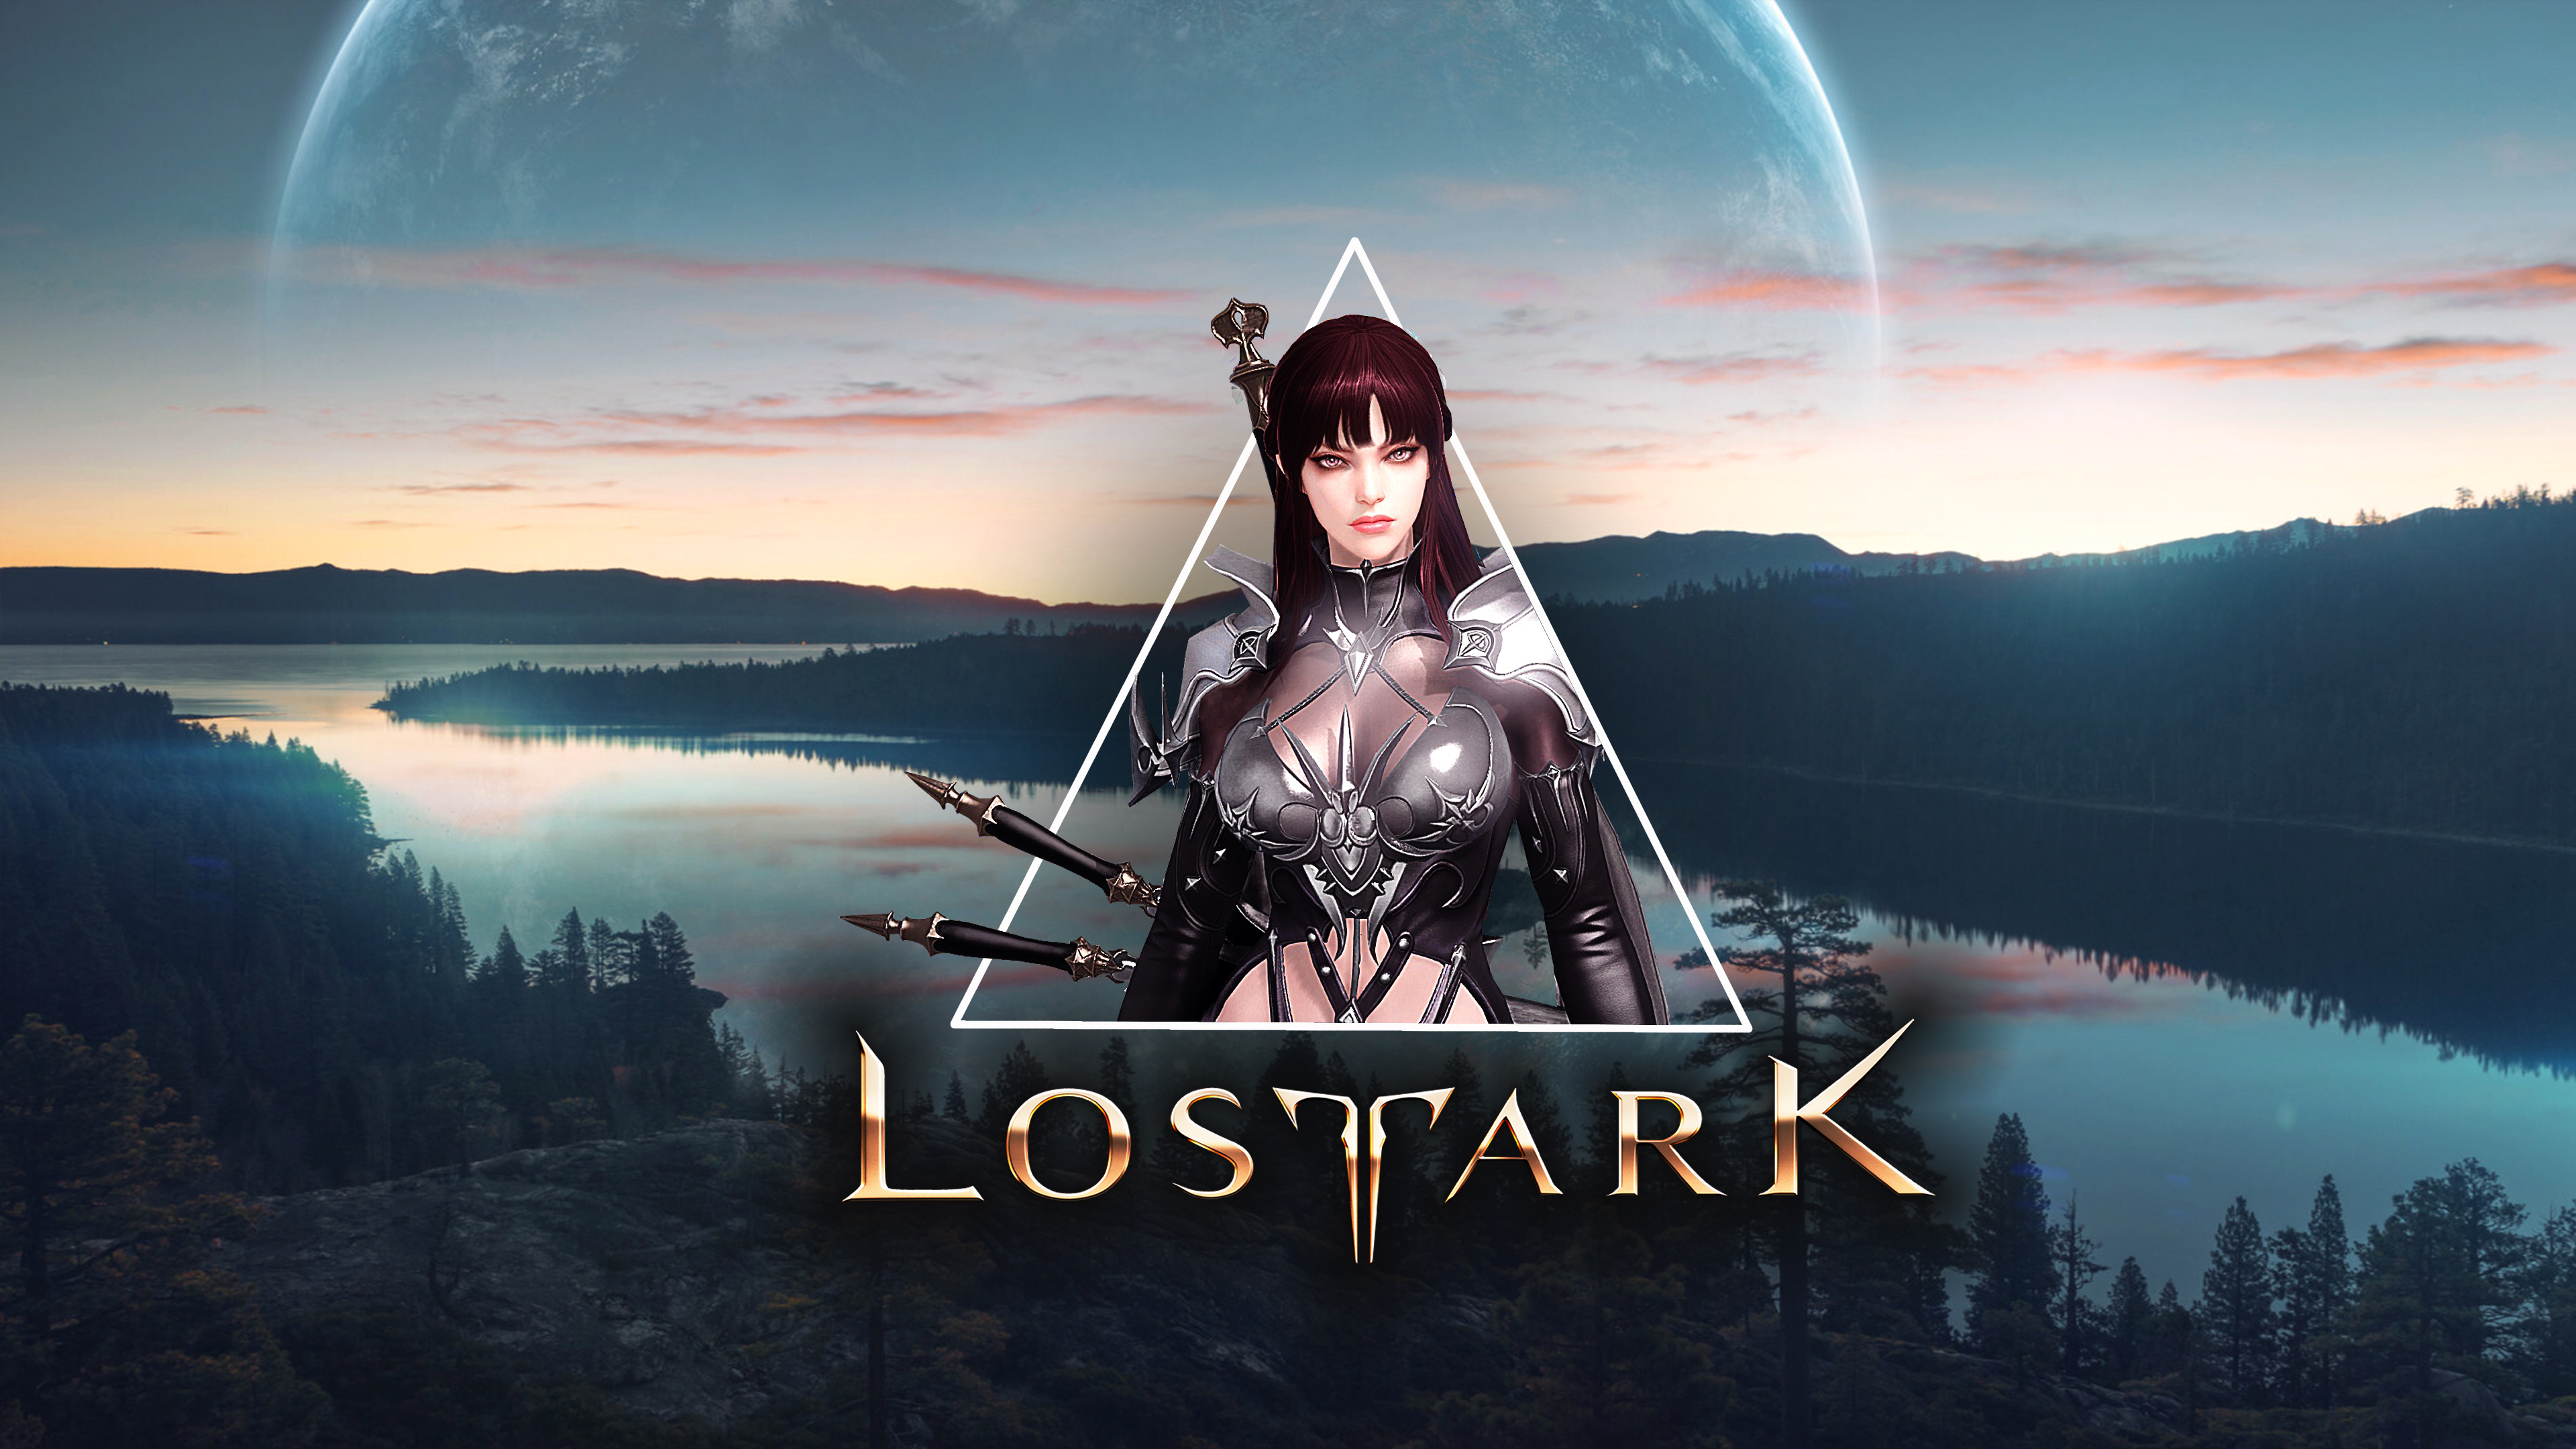 Lostark Fantasy View Personaje Videojuego Picture In Picture 3840x2160